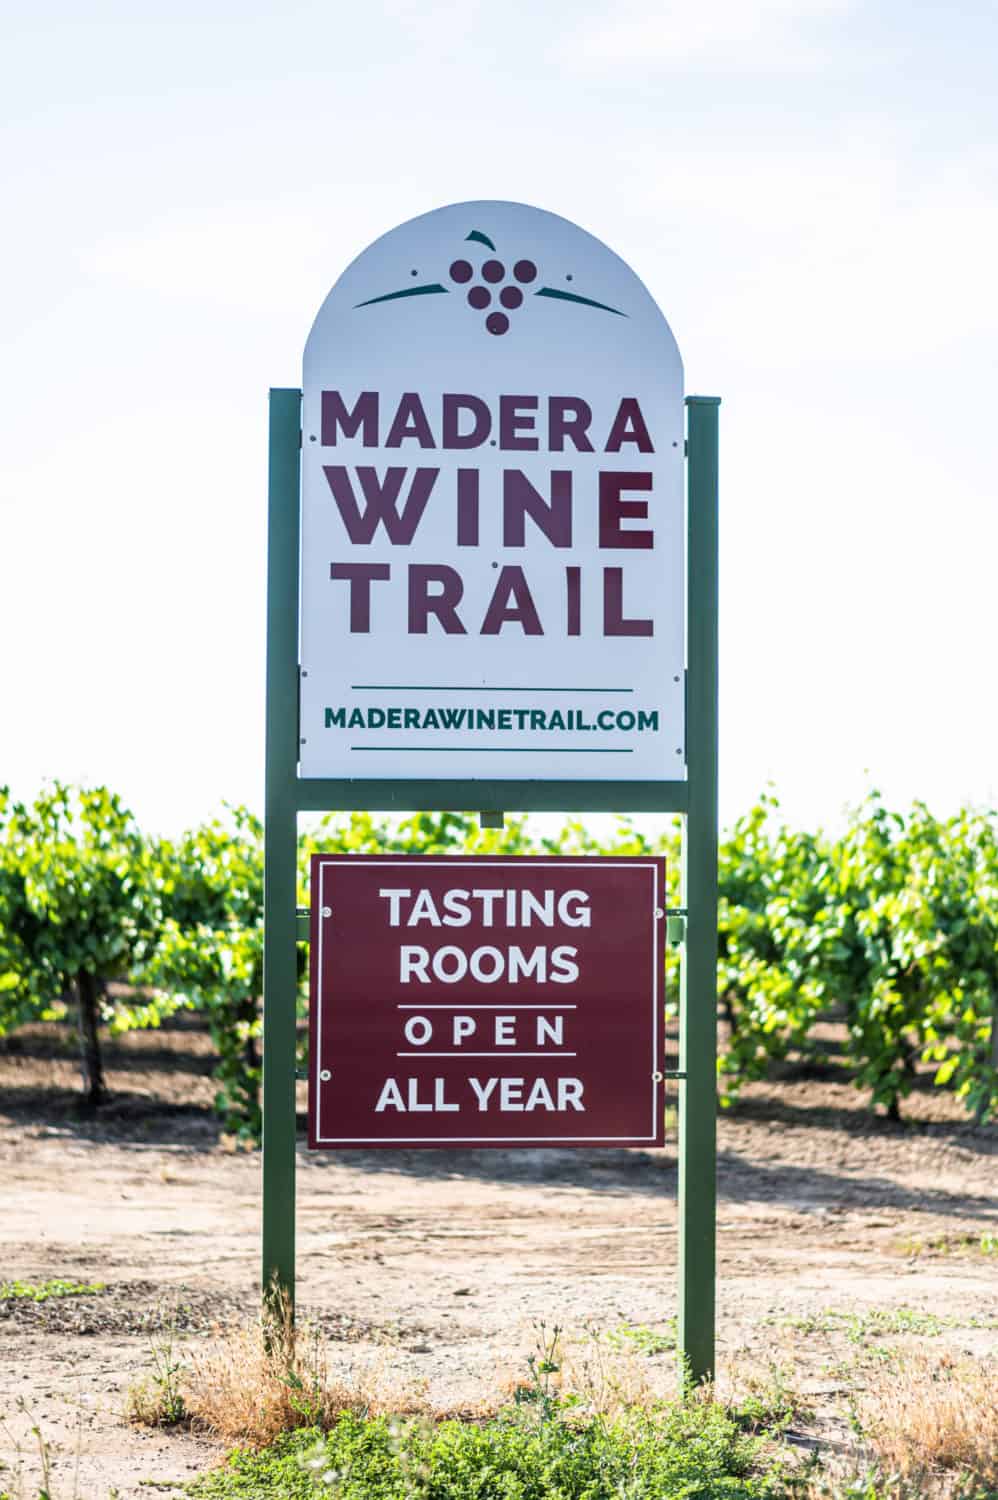 Madera Wine Trail - winegrape farming in california